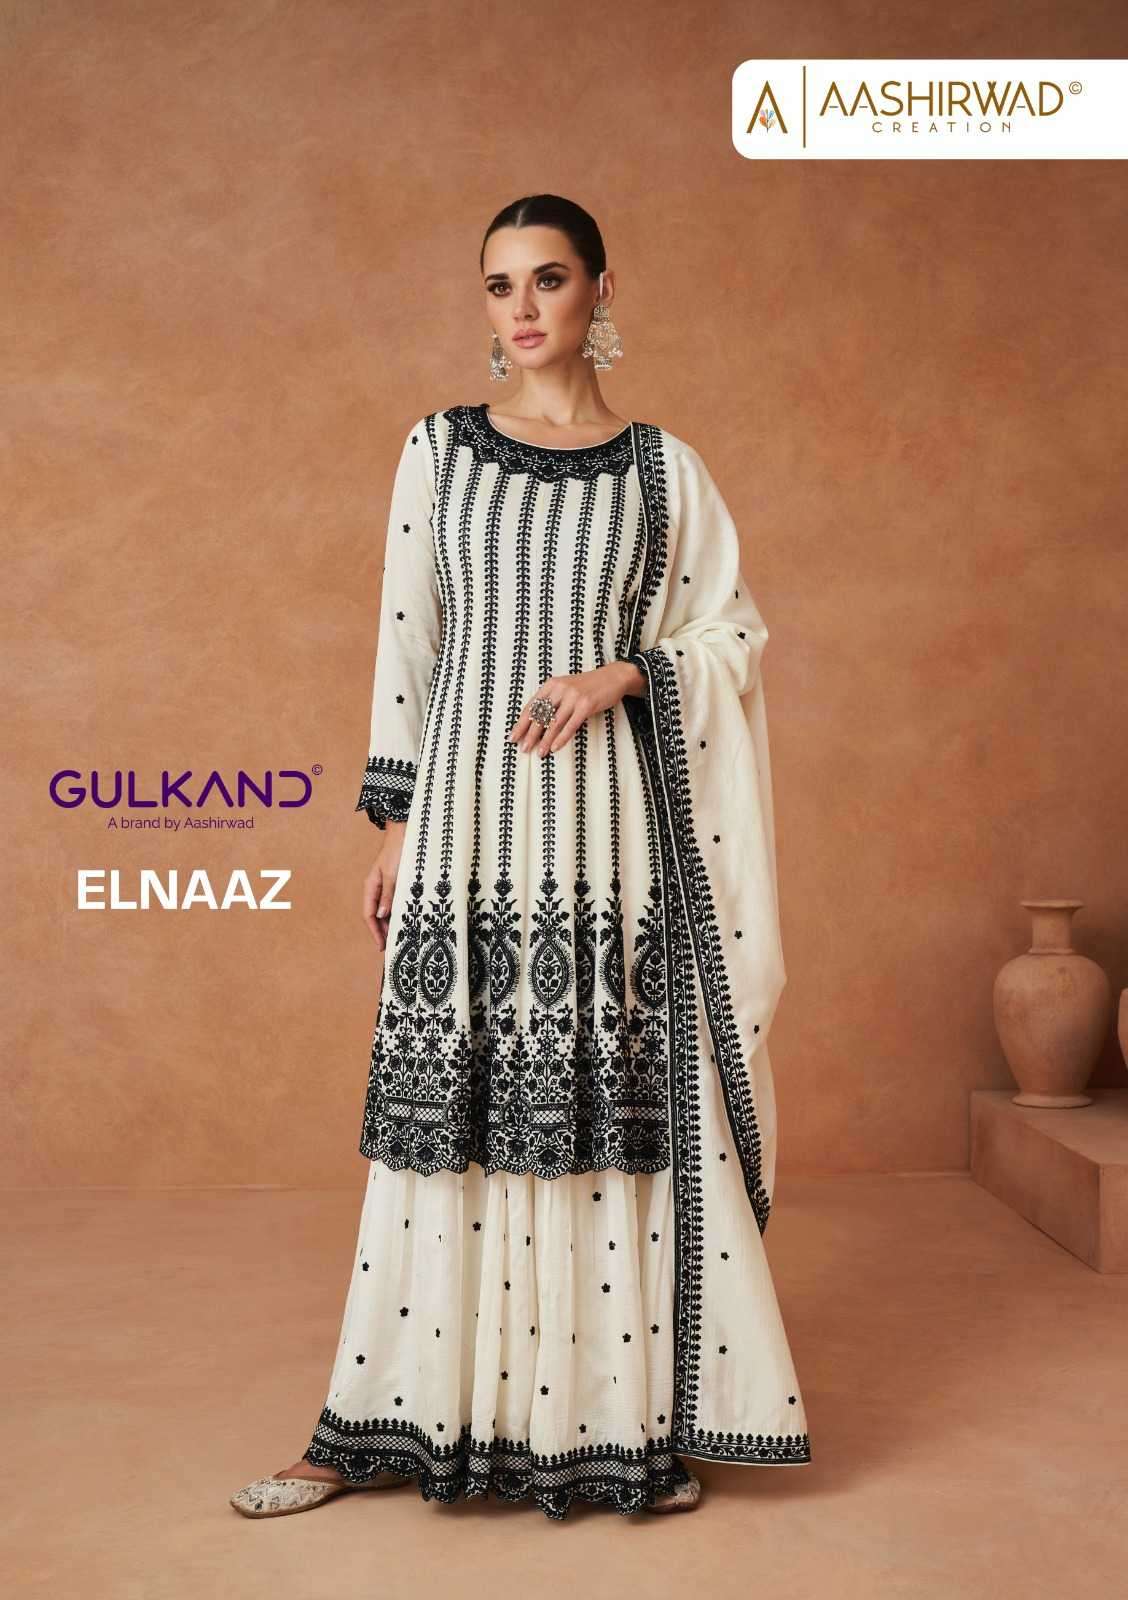 Atasi Women's Designer Anarkali White Salwar Suit Ethnic Indian Cotton  Dress-4 - Walmart.com